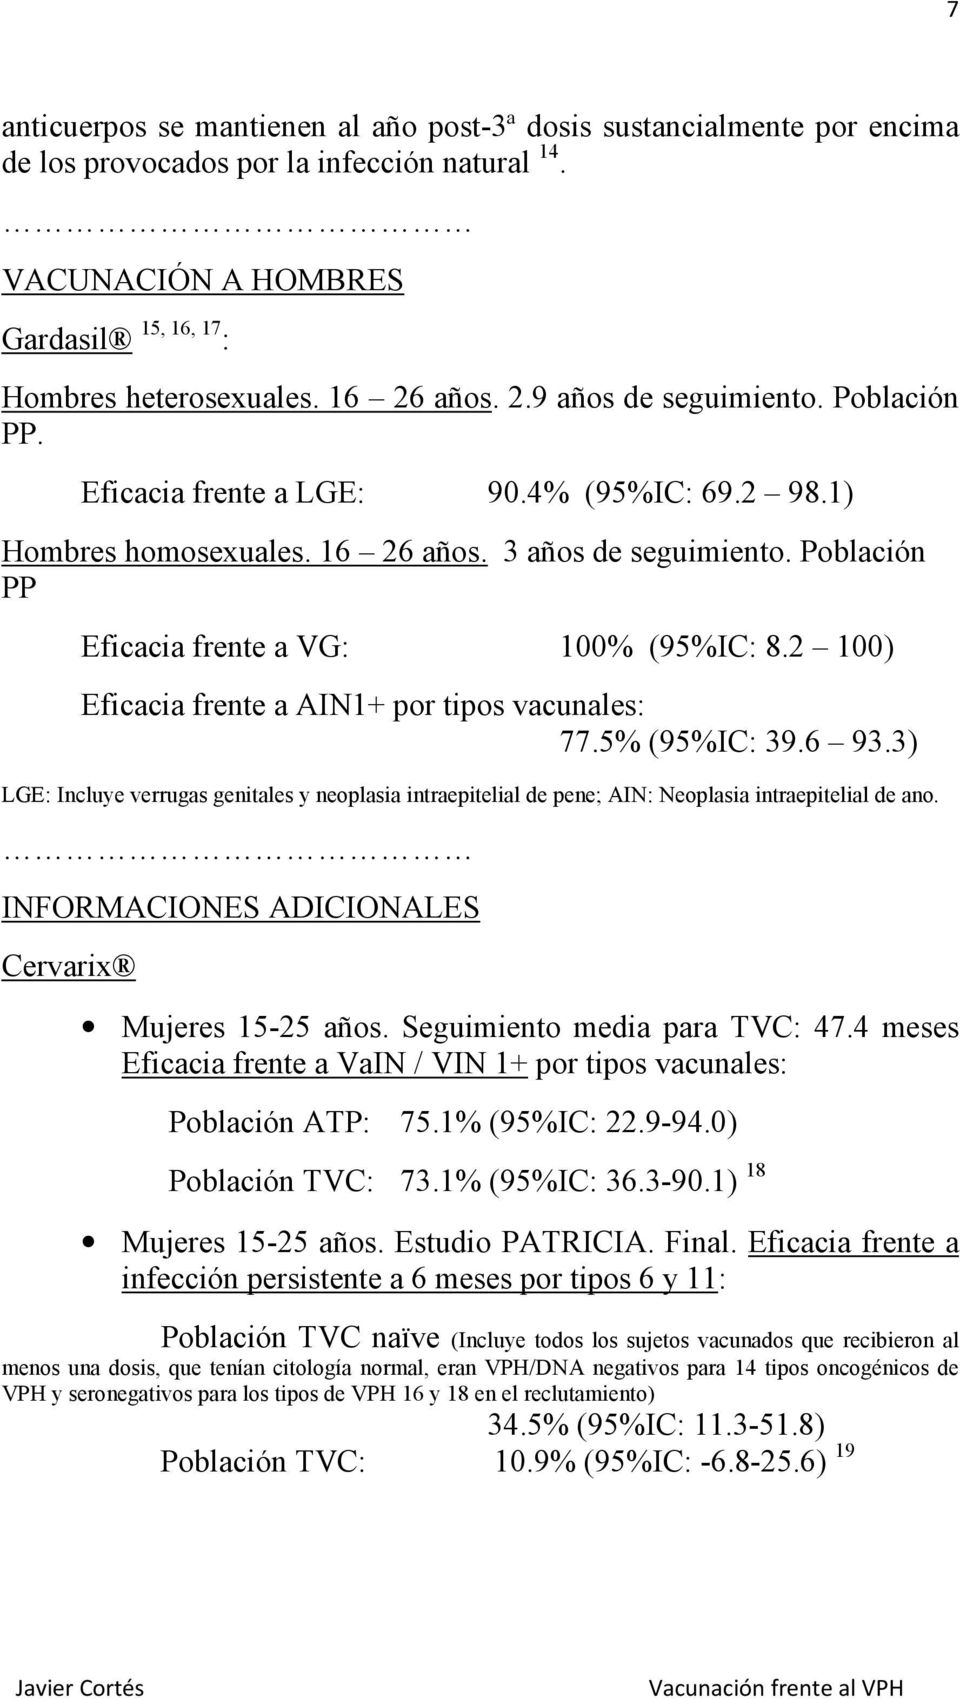 2 100) Eficacia frente a AIN1+ por tipos vacunales: 77.5% (95%IC: 39.6 93.3) LGE: Incluye verrugas genitales y neoplasia intraepitelial de pene; AIN: Neoplasia intraepitelial de ano.